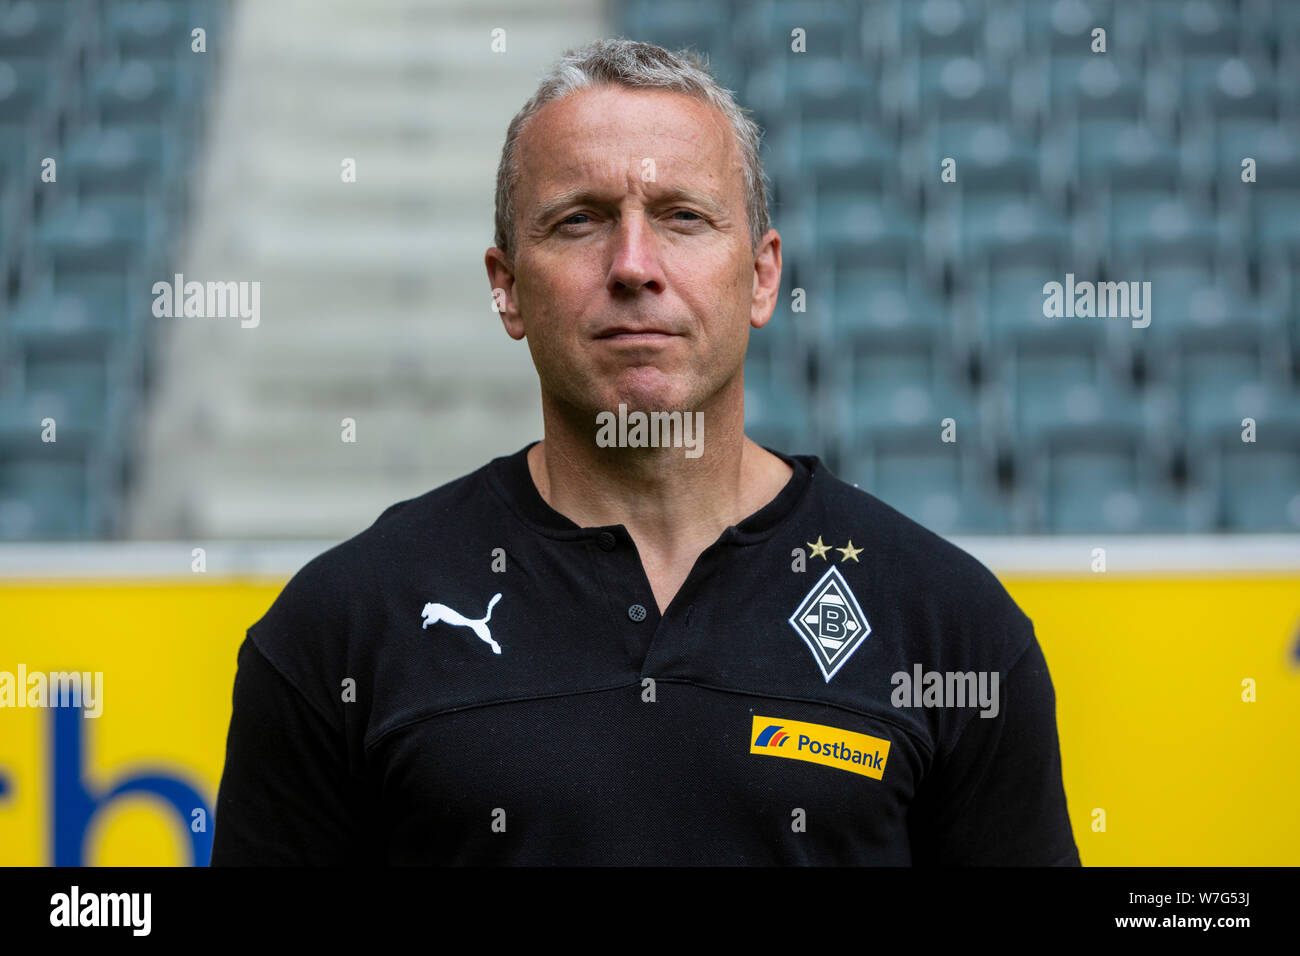 Calcio, Bundesliga, 2019/2020, Borussia Moenchengladbach, premere il tasto di ripresa fotografica, ritratto, assistant coach Frank Geideck Foto Stock